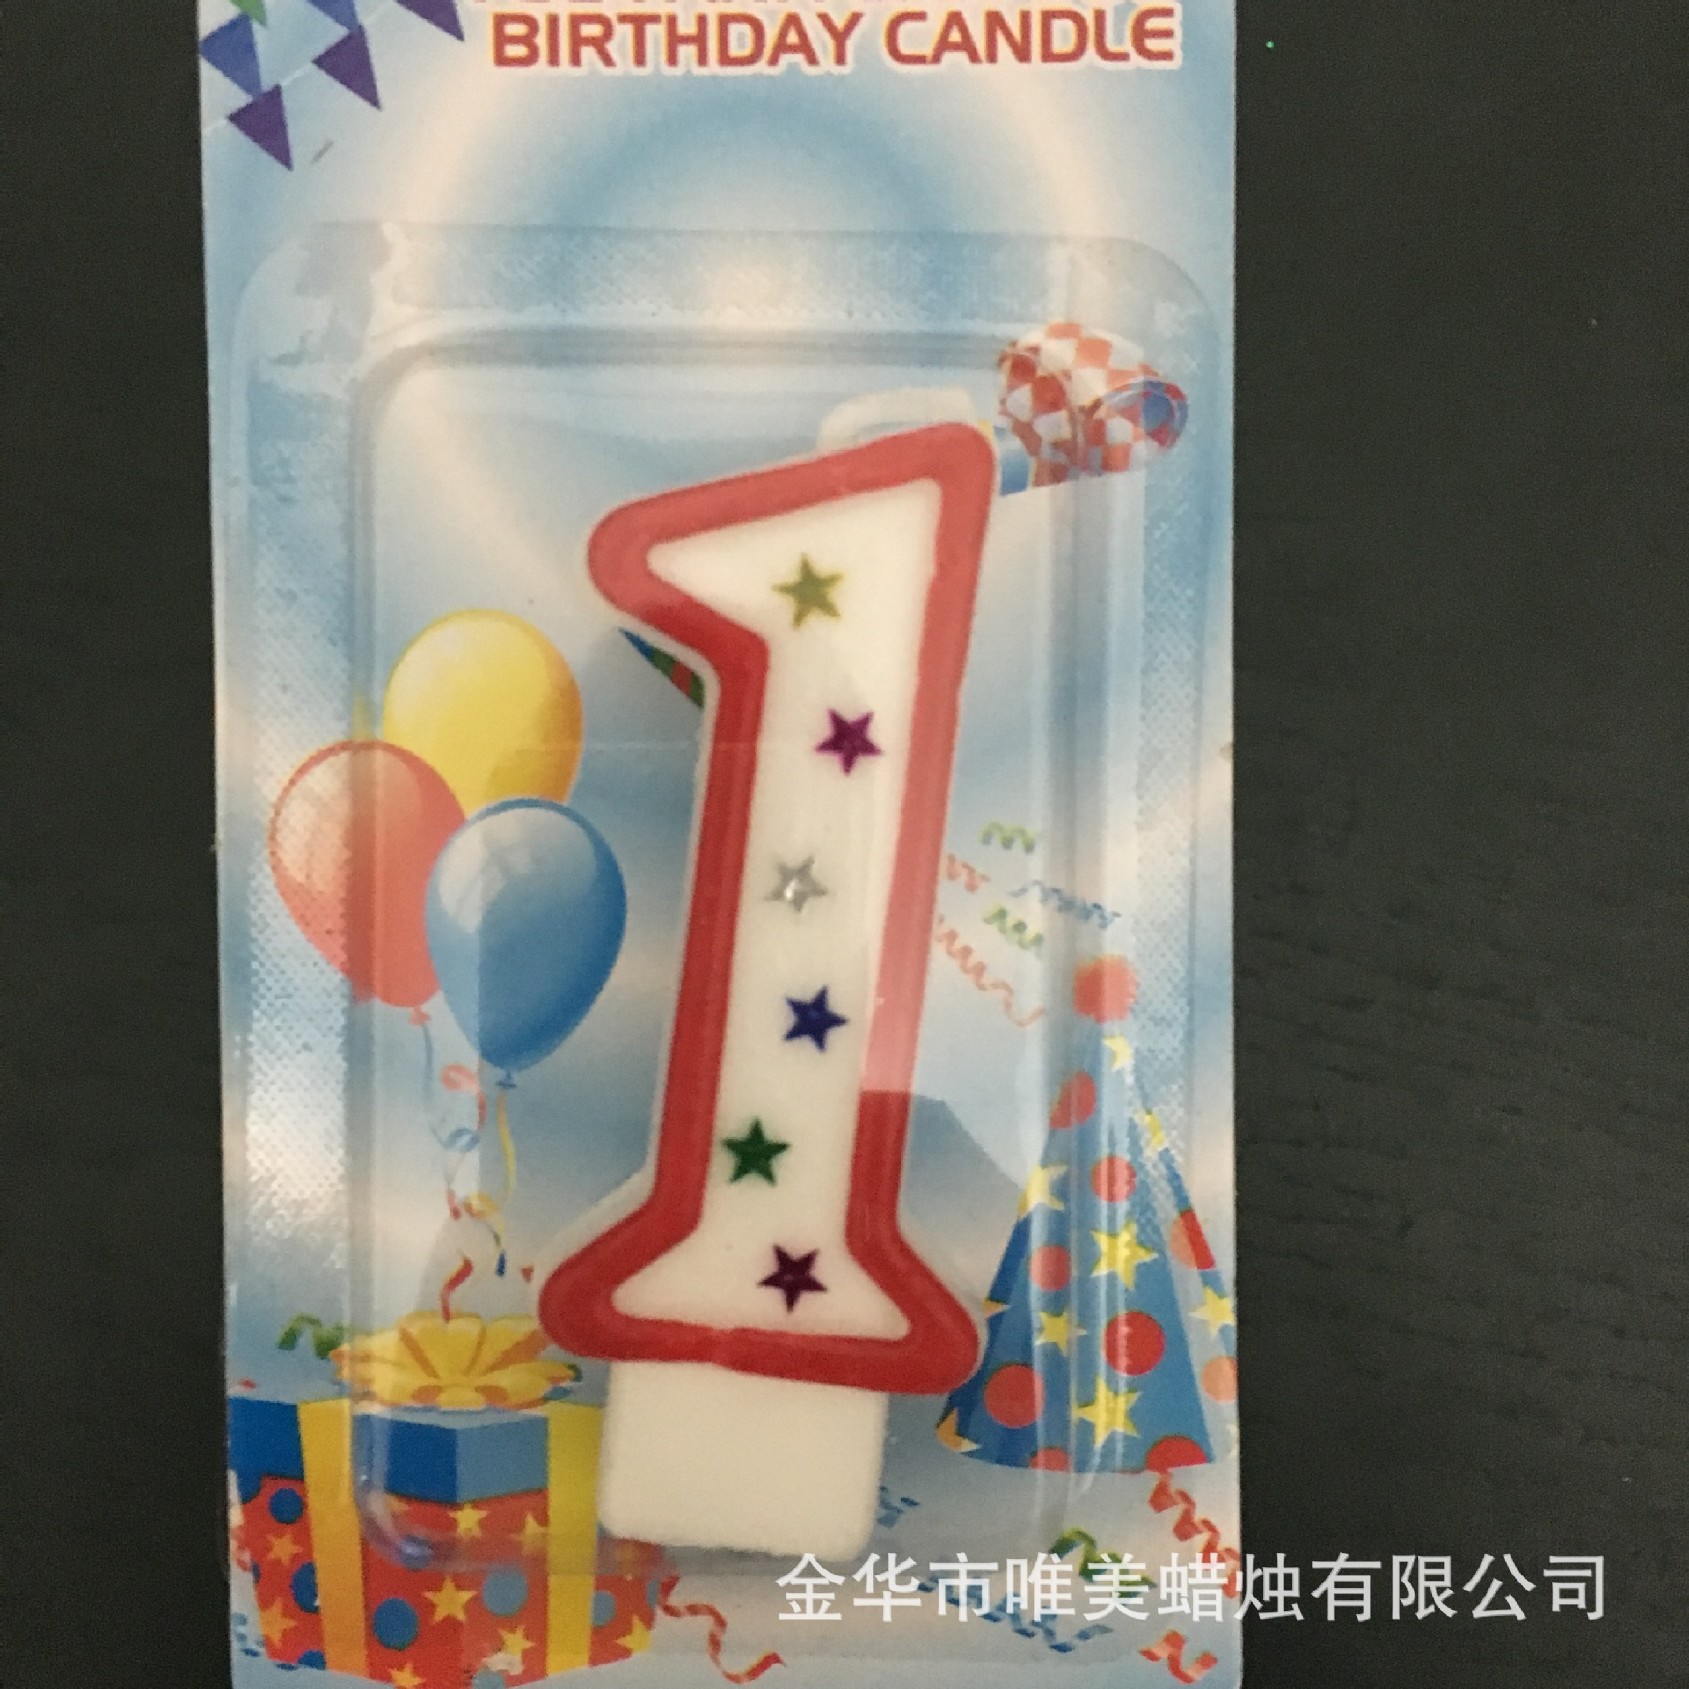 厂家直销生日蜡烛 数字蜡烛创意蜡烛 蜻蜓蜡烛工艺蜡烛示例图9